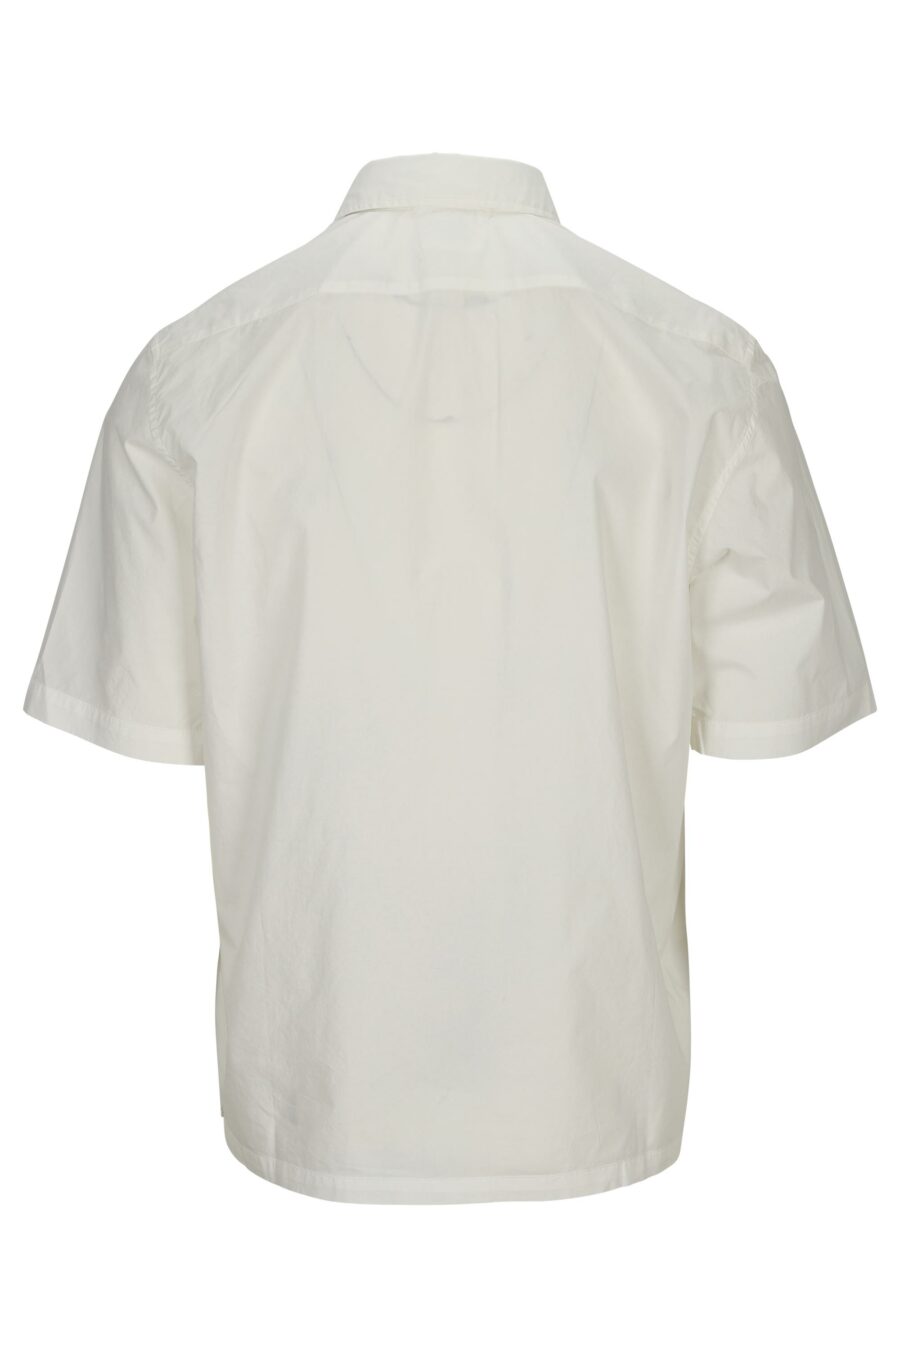 Chemise blanche à manches courtes avec poche et mini-logo - 7620943694826 1